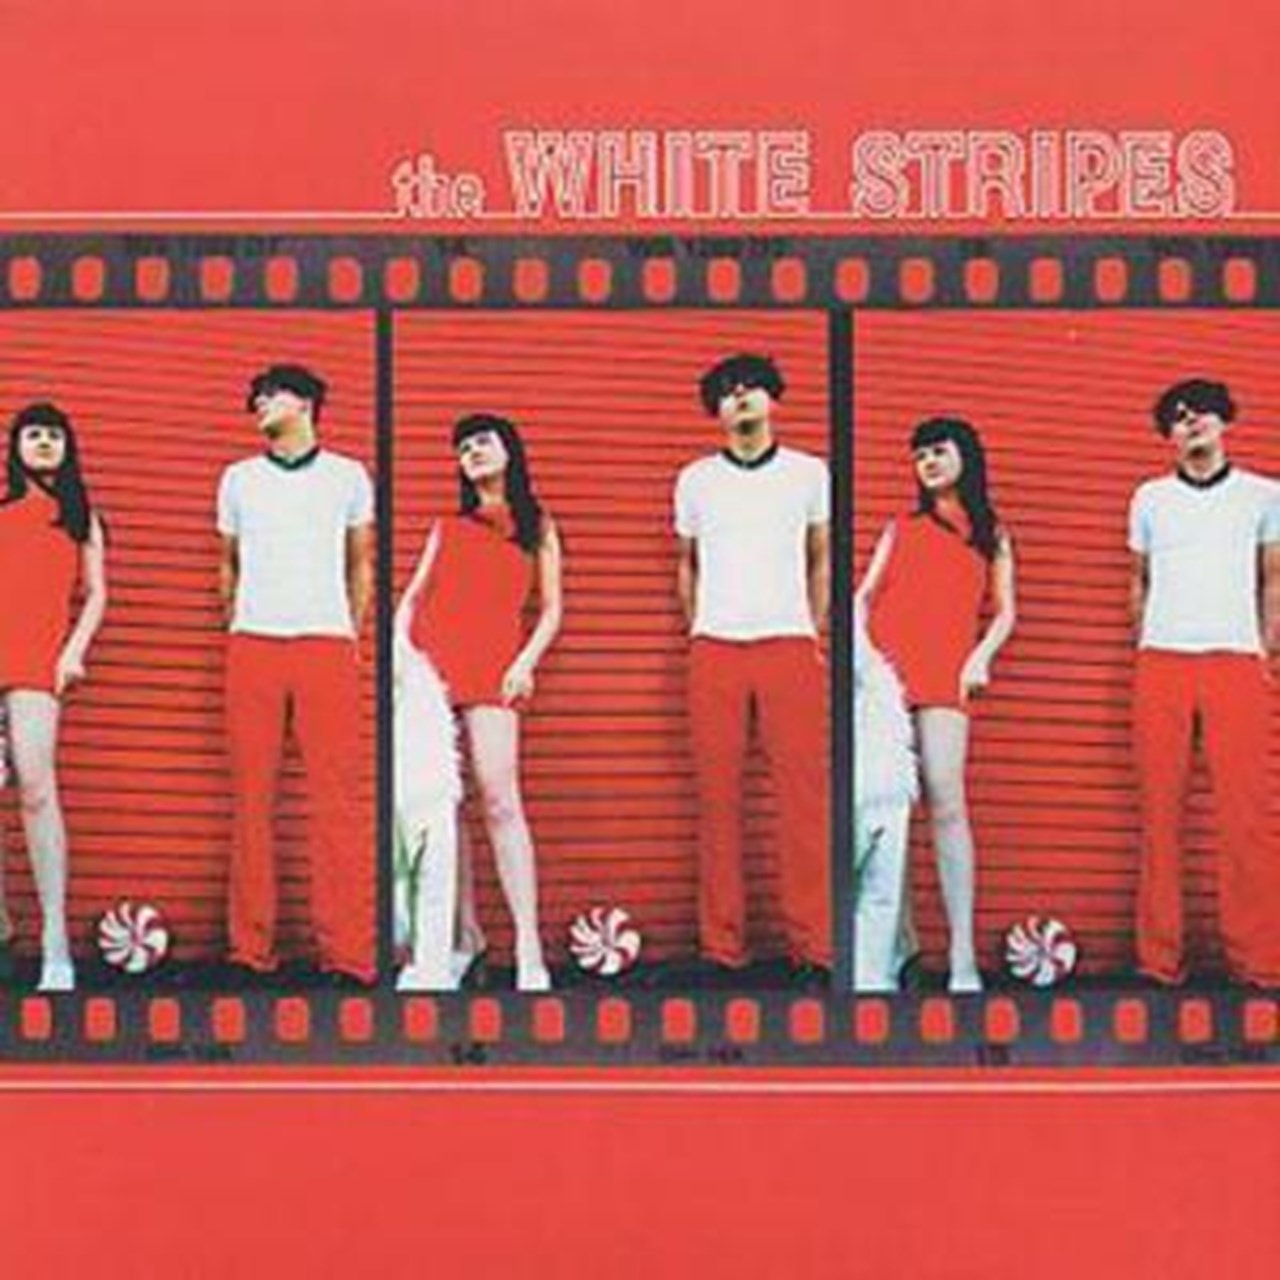 best white stripes songs